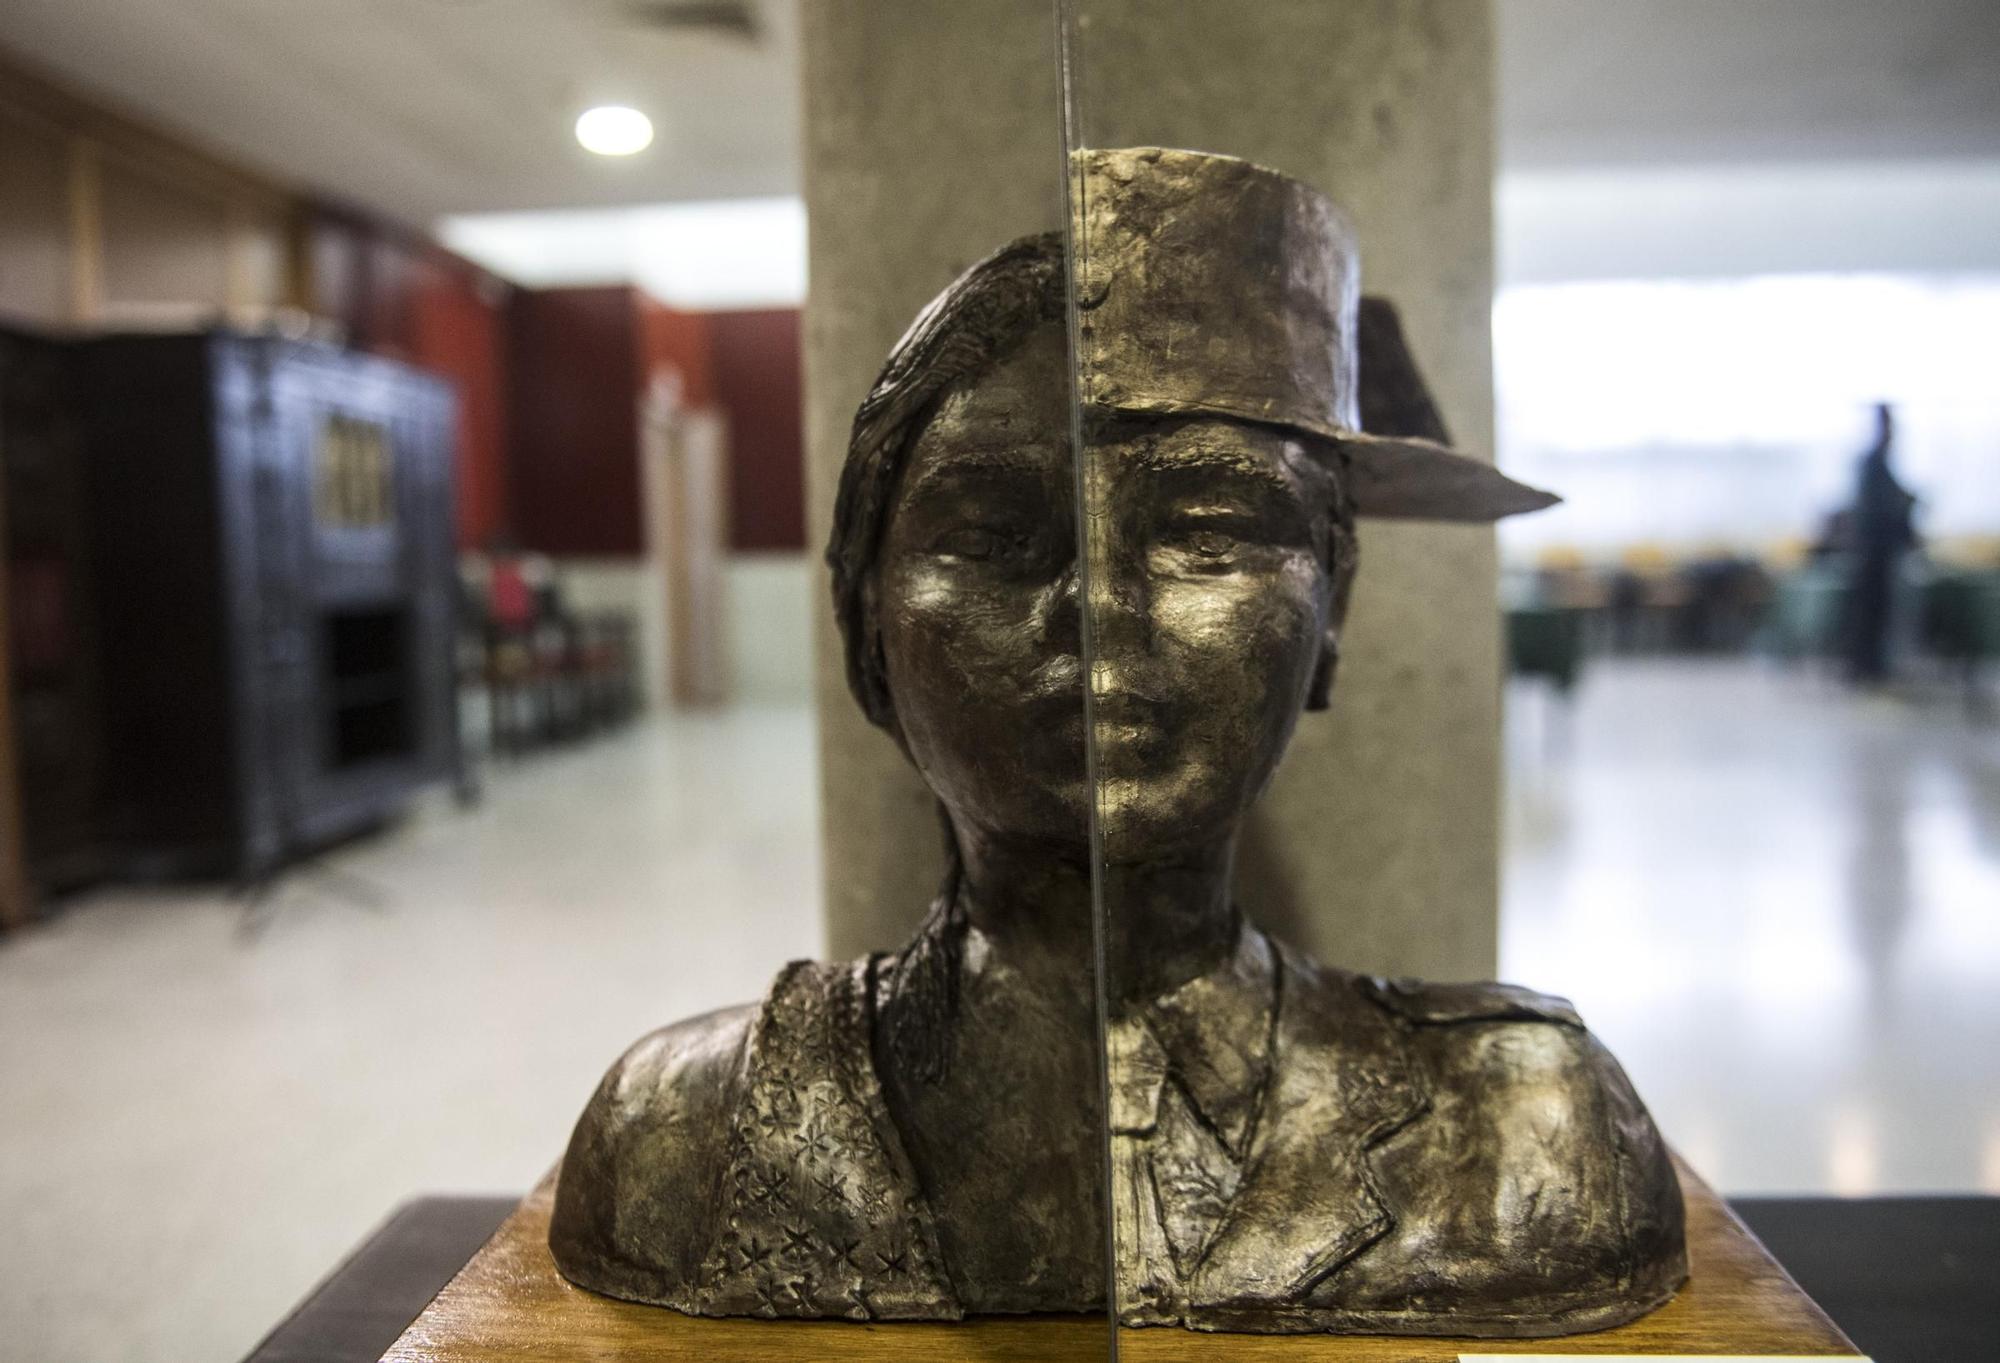 GALERÍA | Así fue la entrega de premios del concurso nacional 'La mujer Guardia Civil' en la Comandancia de Cáceres